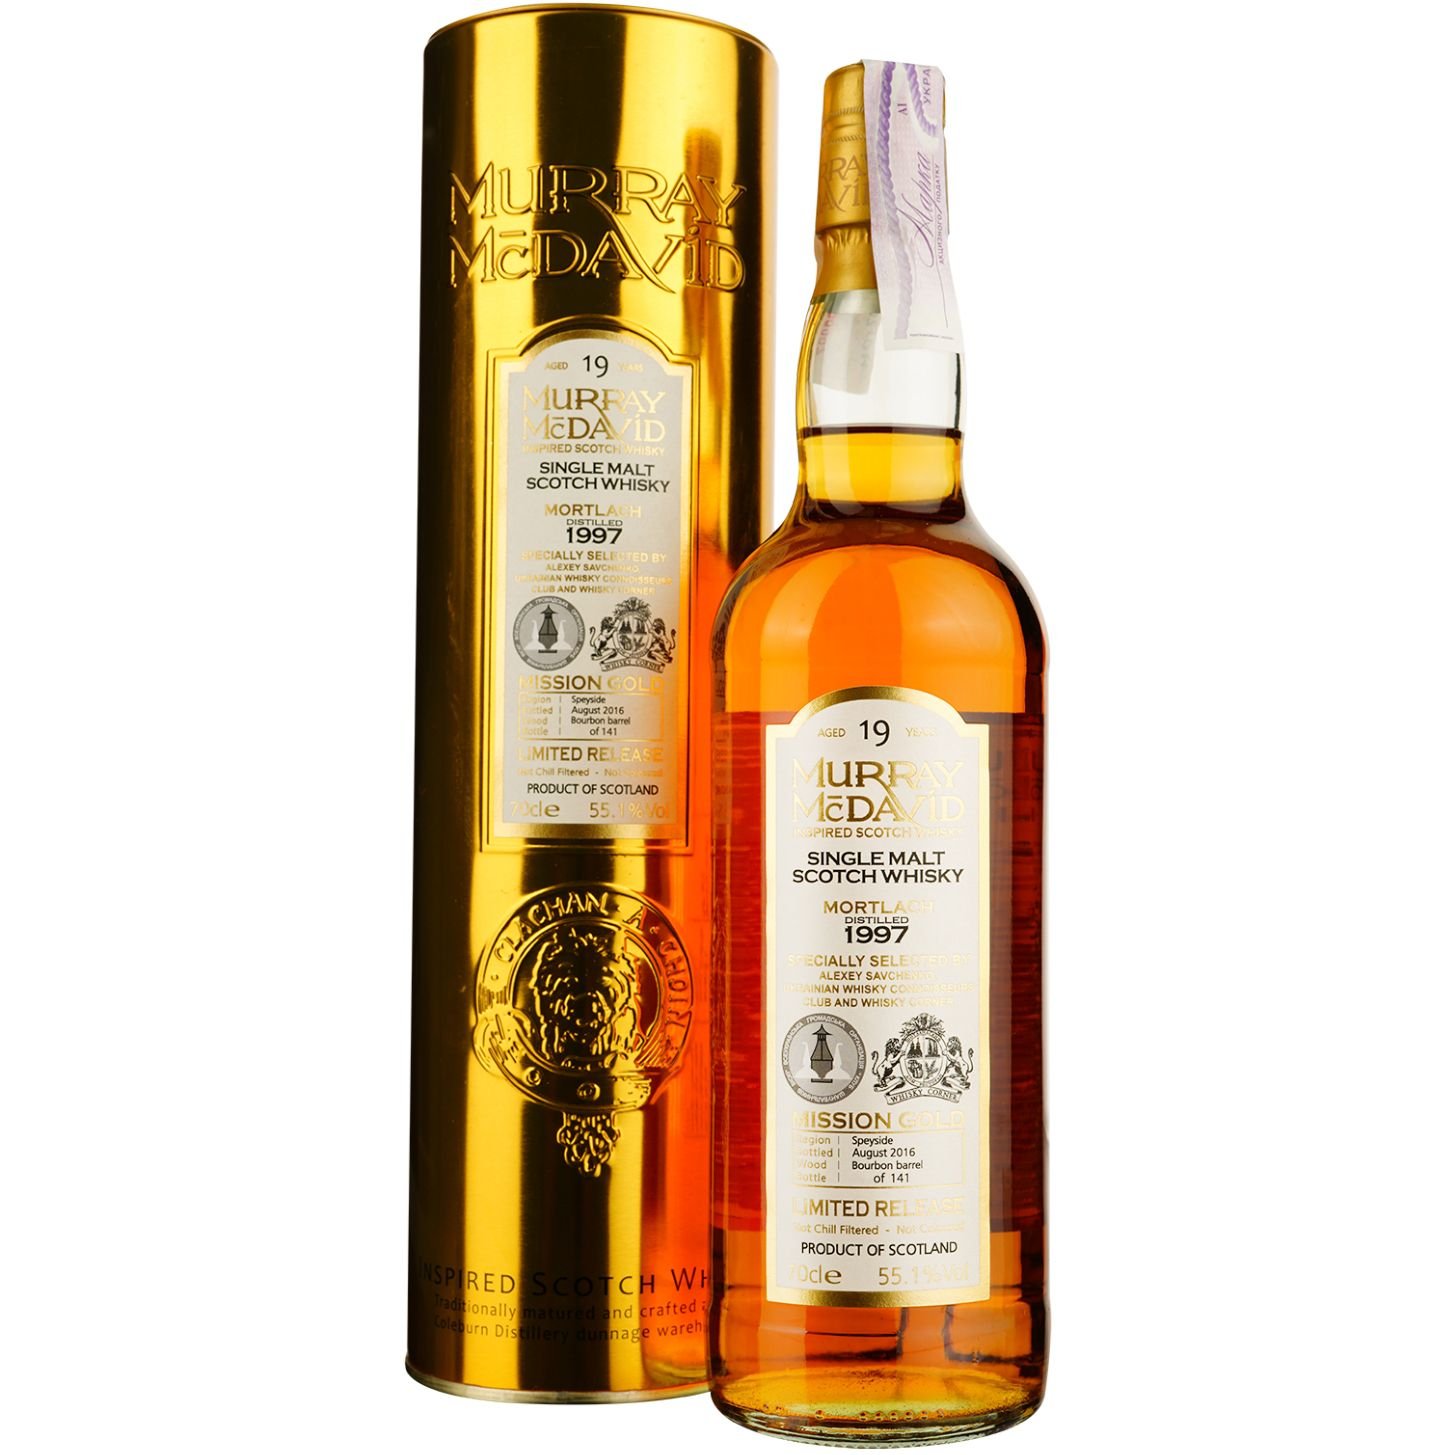 Віскі Mortlach Murray McDavid 19 Years Old Single Malt Scotch Whisky, у подарунковій упаковці, 55,1%, 0,7 л - фото 1